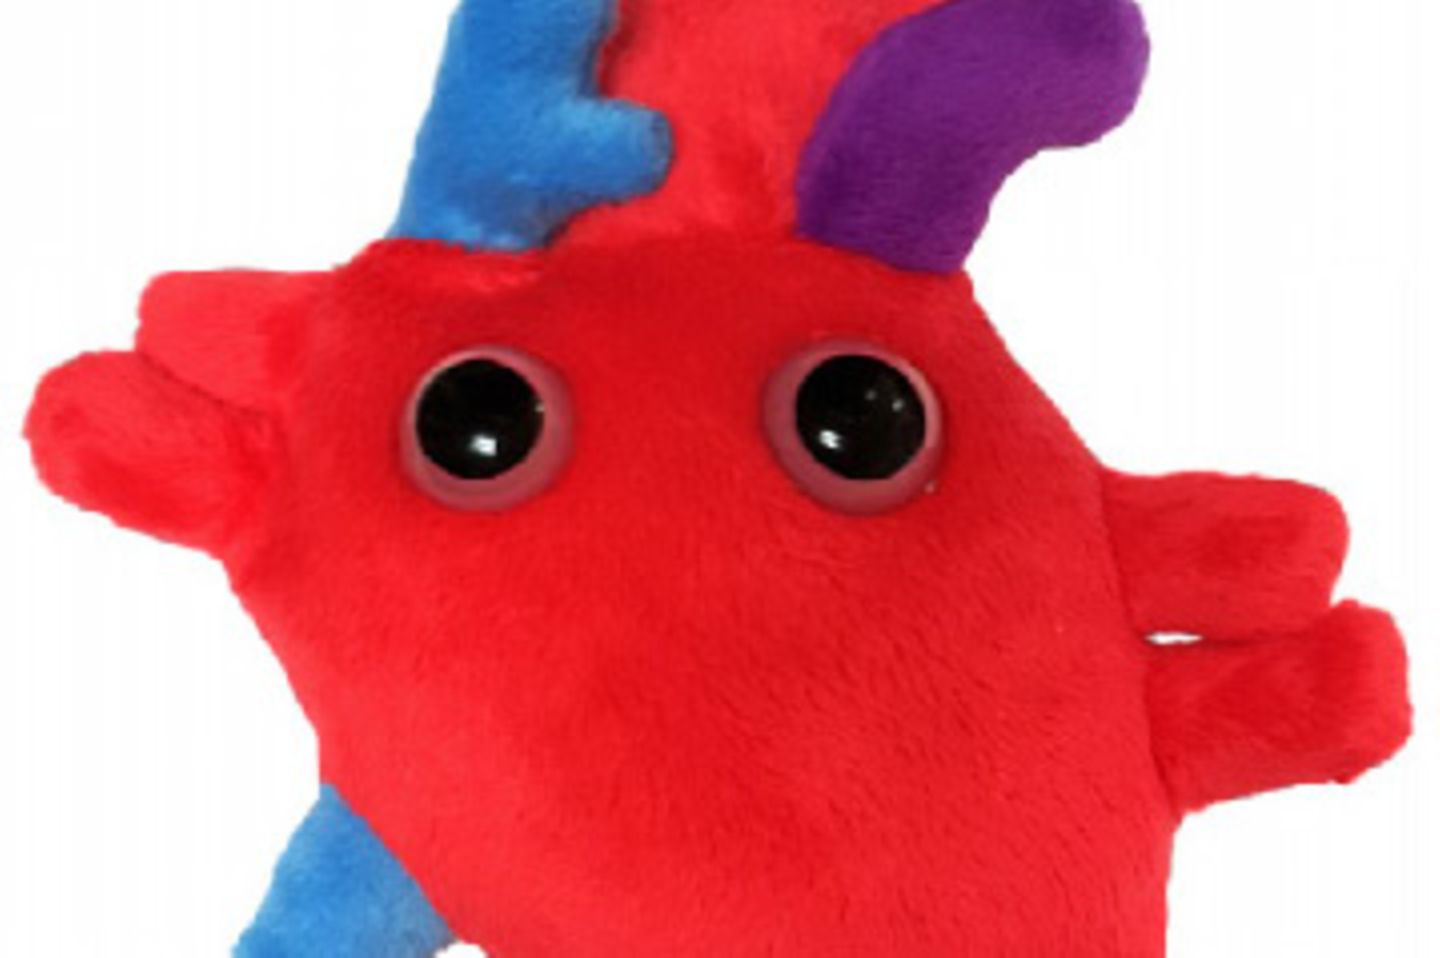 Und wieder ein Fall für den Biologieunterricht: das Herz. So sieht es ungefähr aus, liebe Kinder. Natürlich ohne die Augen.